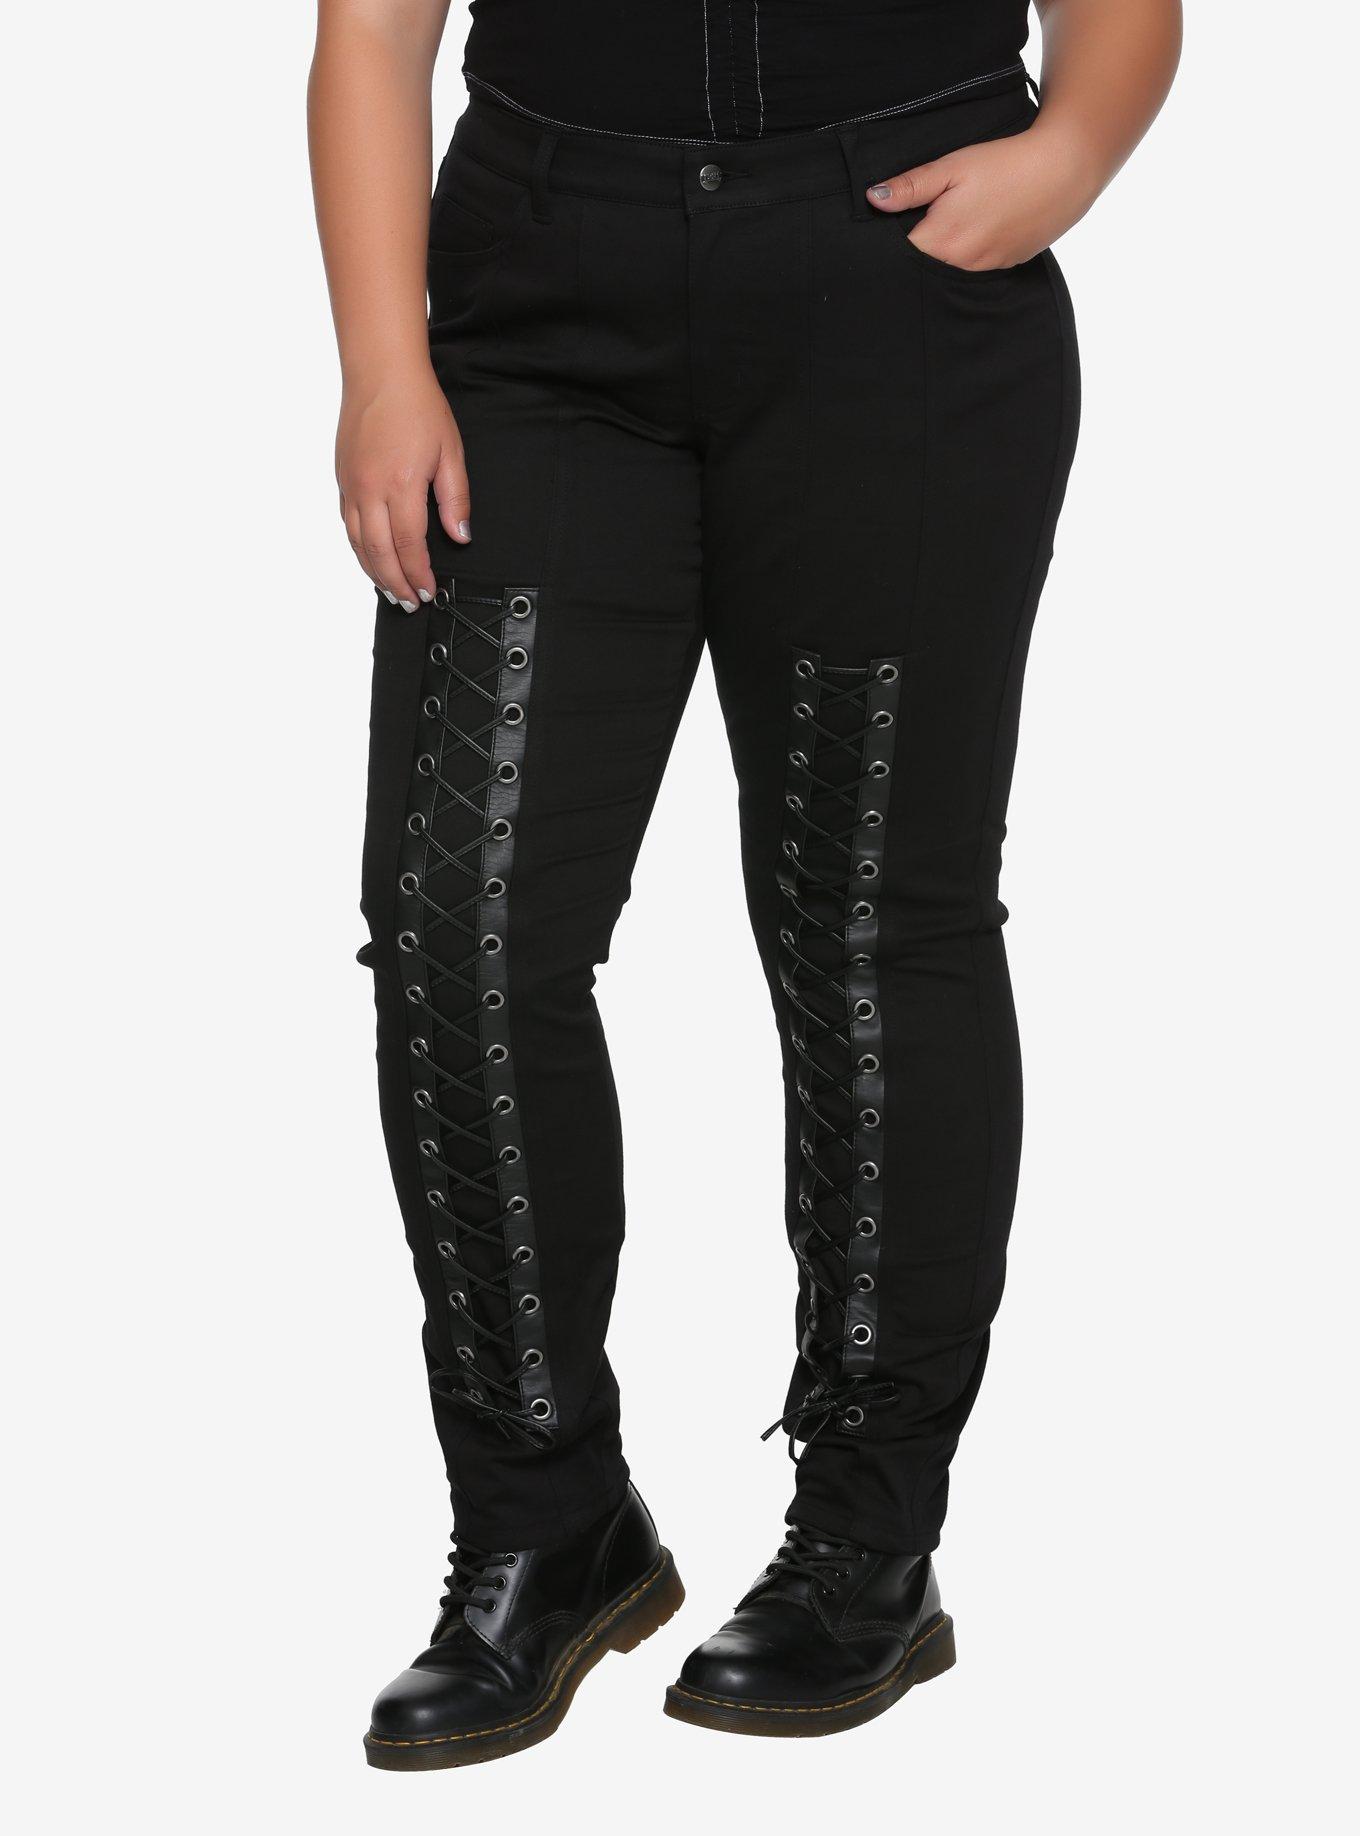 Tripp Black Lace-Up Pants Plus Size